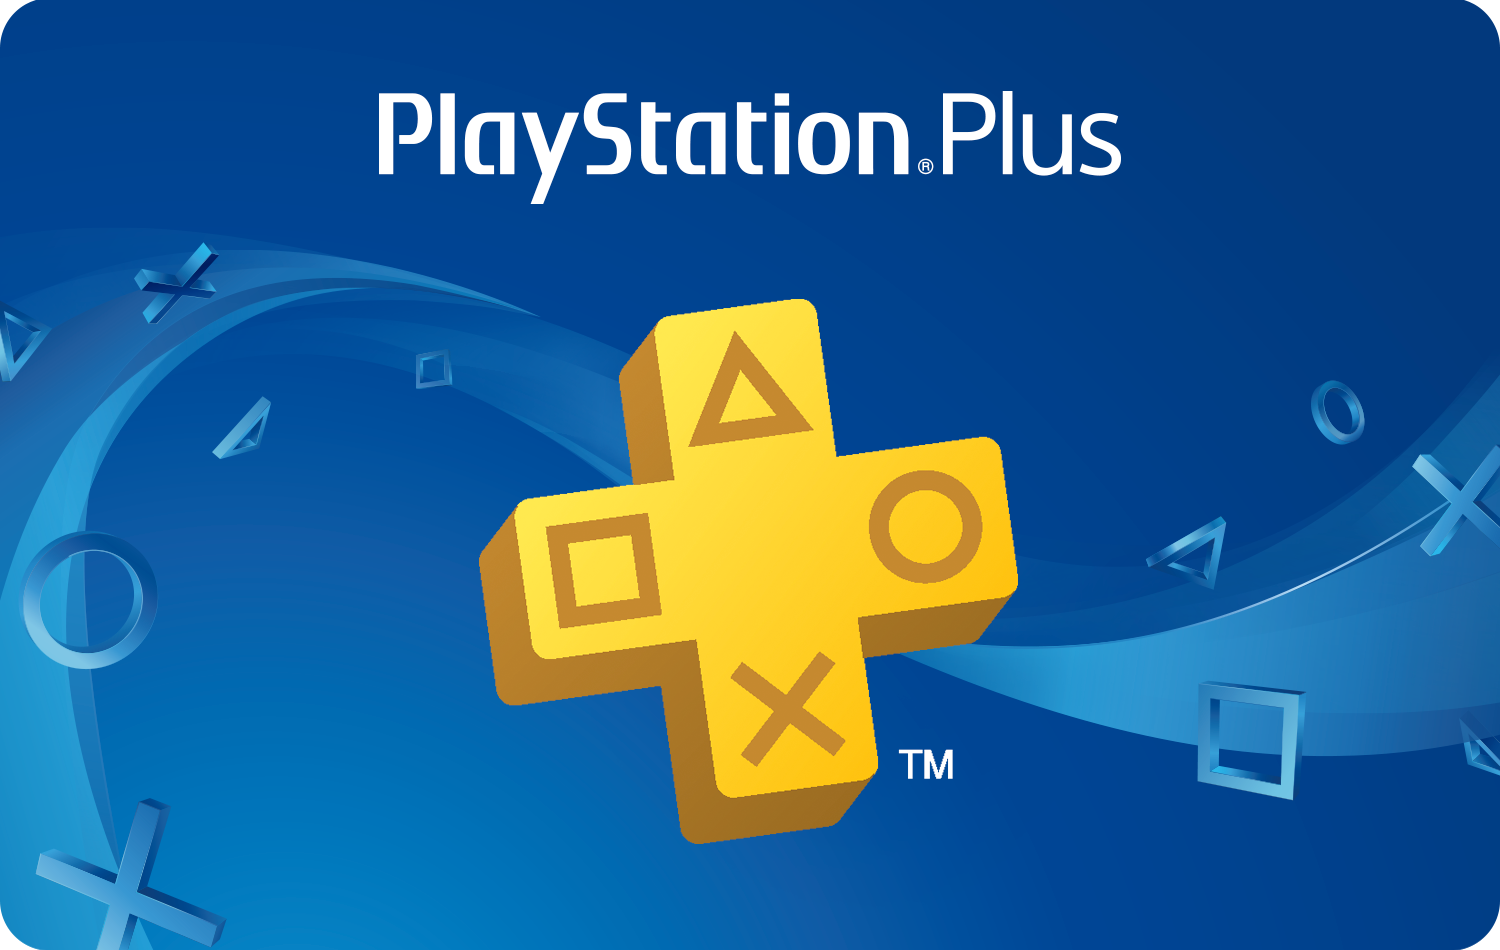 PlayStation Plus : Control Ultimate Edition, Concrete Genie et Destruction AllStars offerts en février